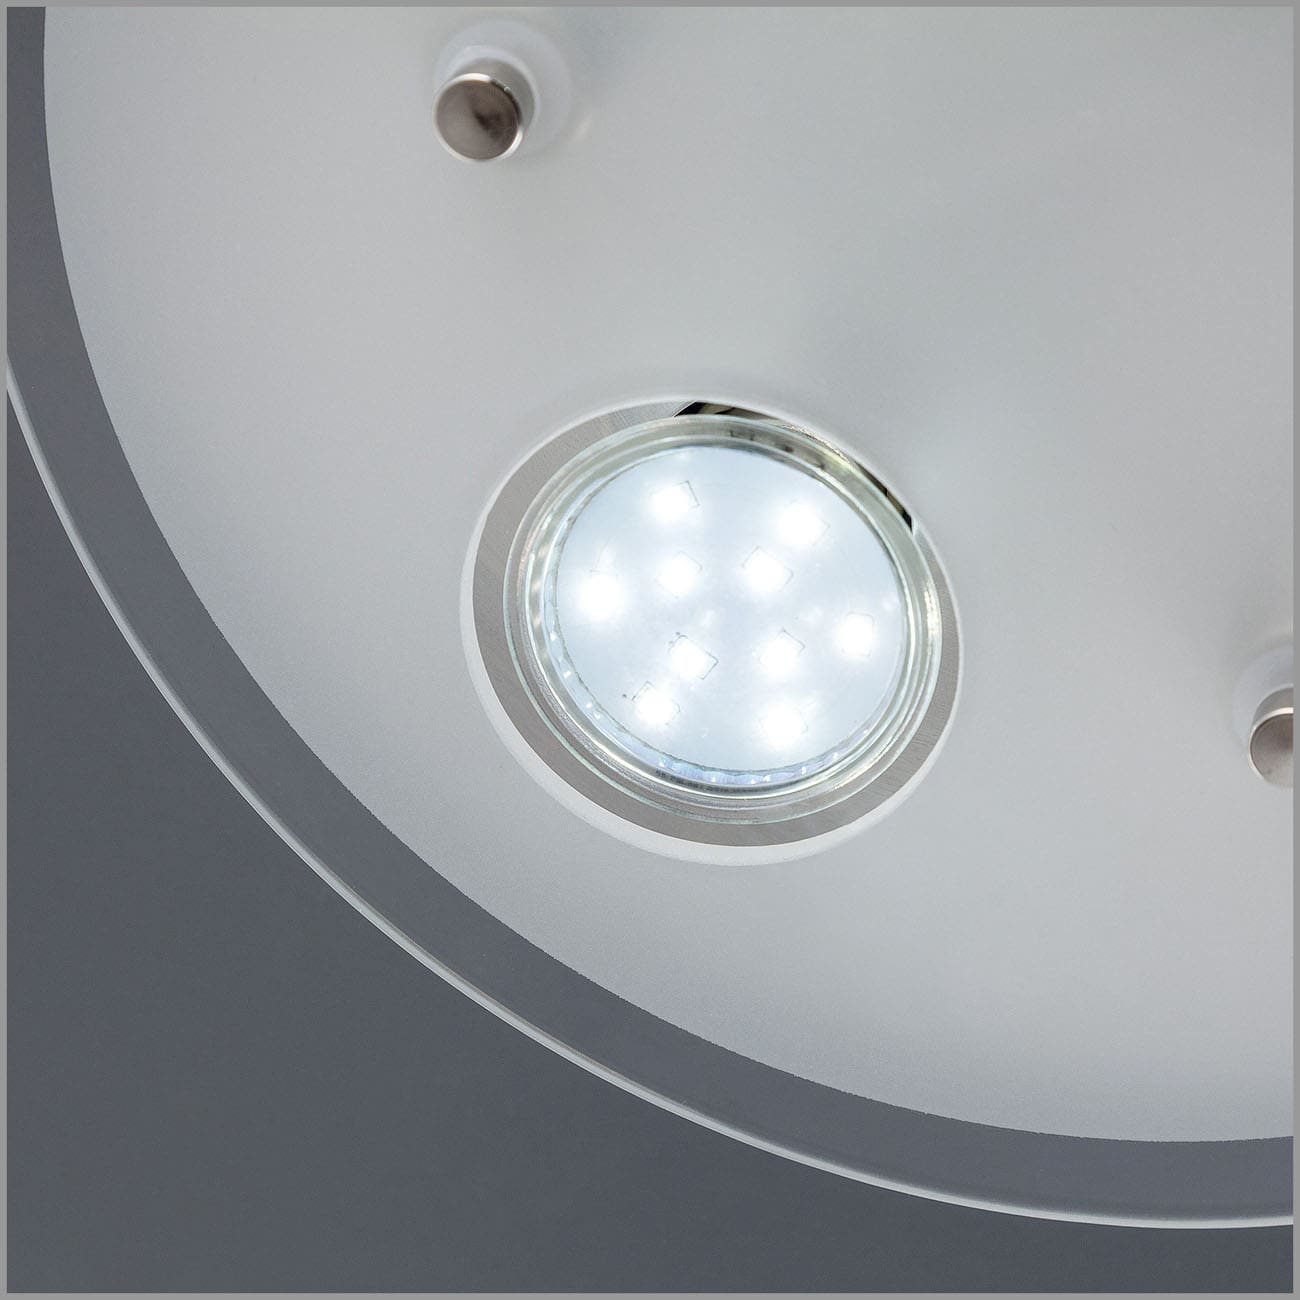 LED Deckenleuchte rund 25x7 cm - 3-flammig - moderne Deckenlampe Glas Metall GU10 9W 750lm warmweiß | Matt-Nickel - 6